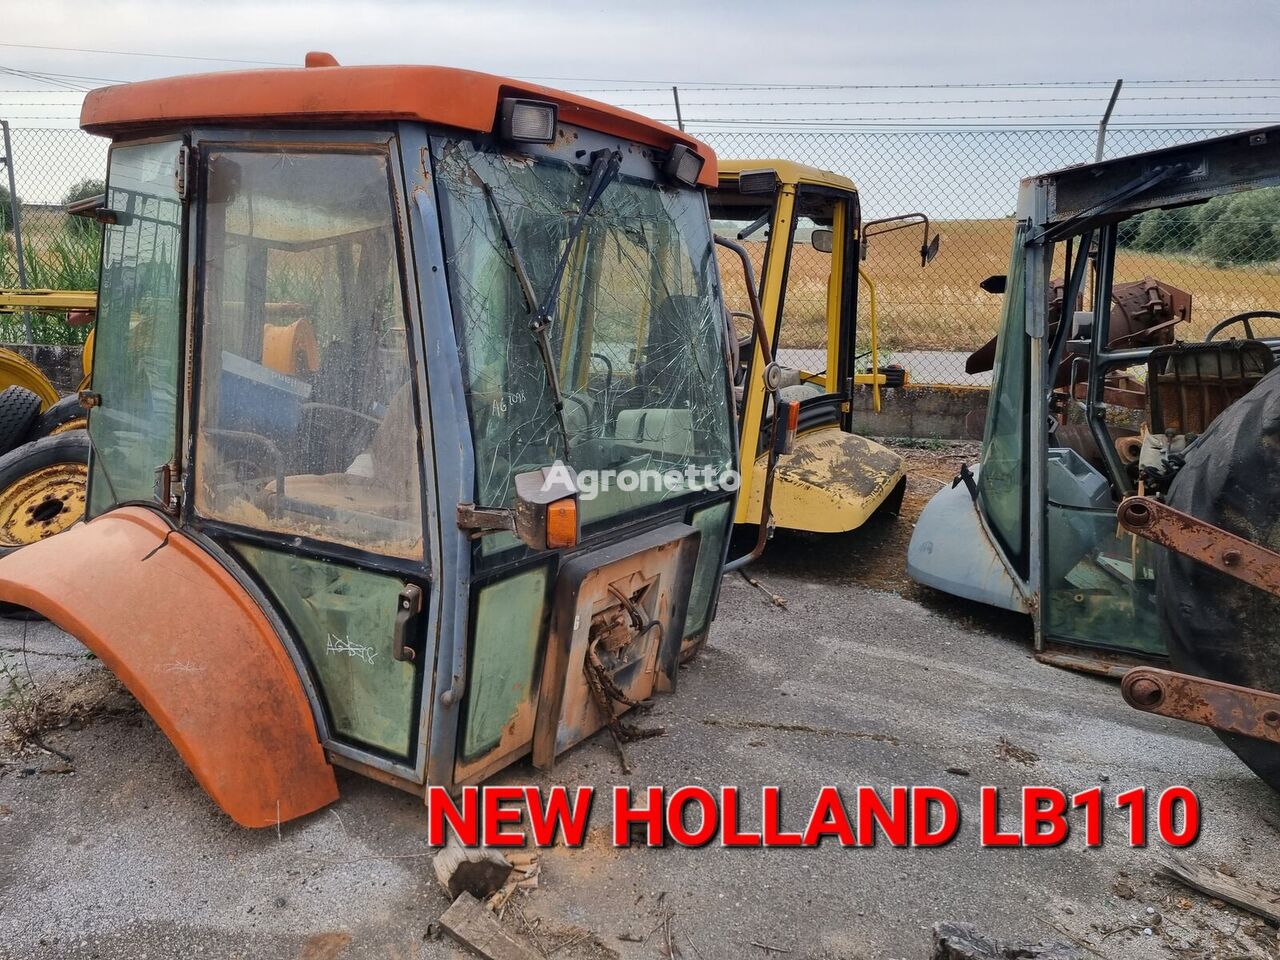 cabina New Holland LB110 per trattore cingolato per elementi